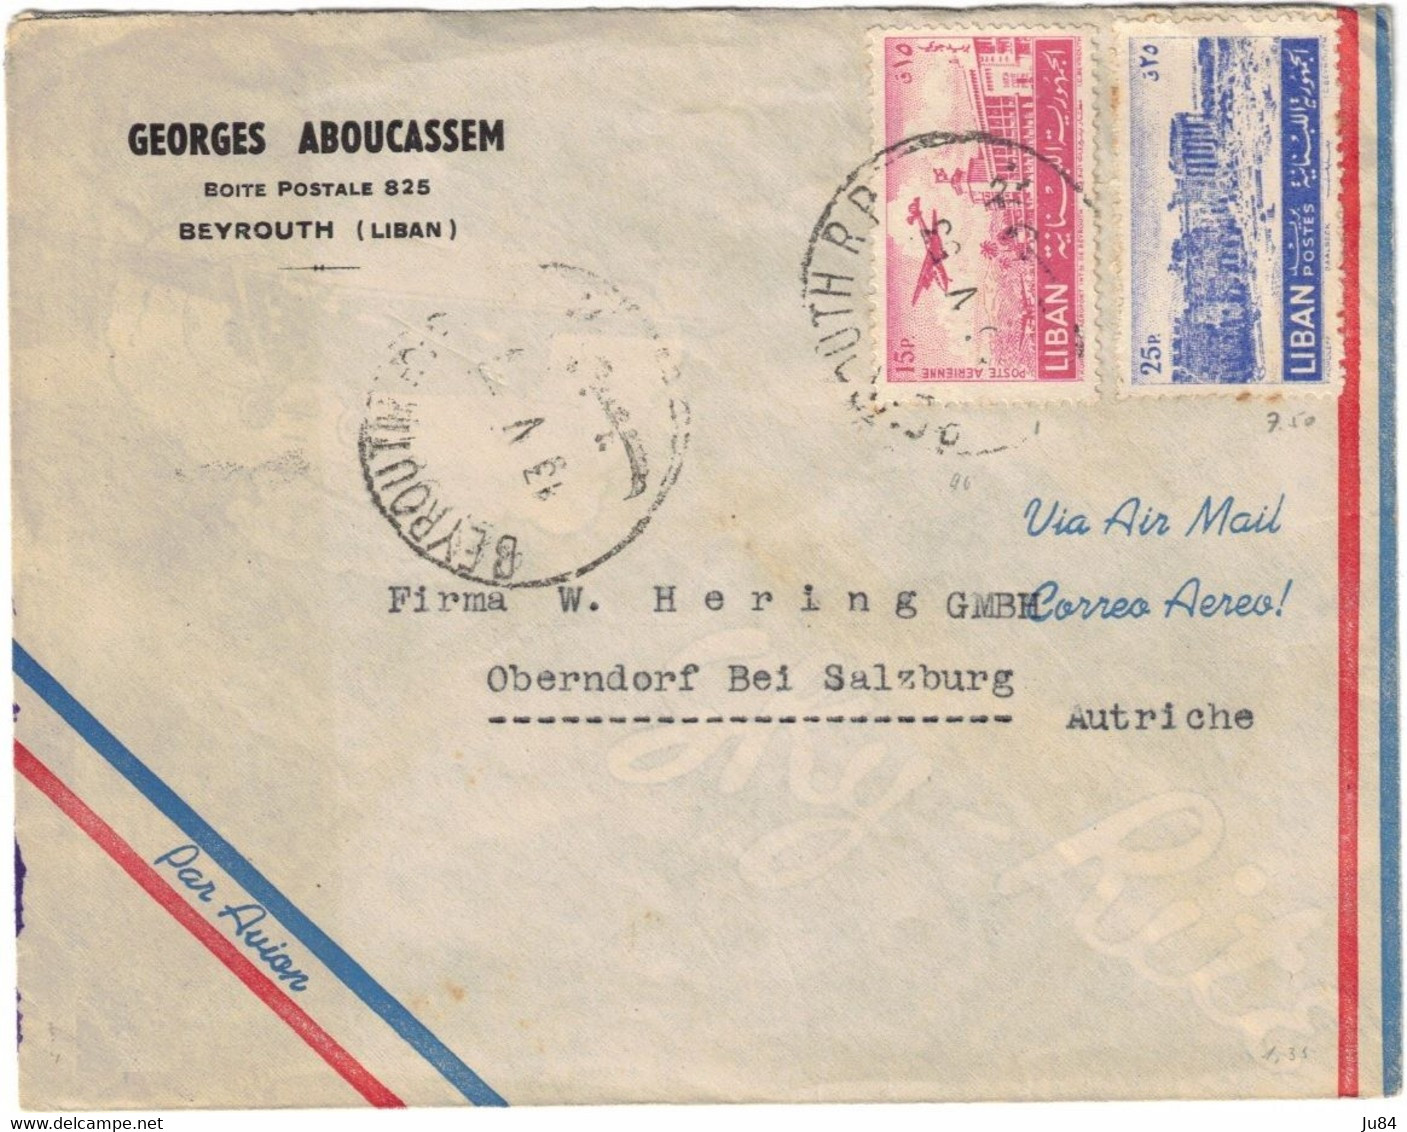 Liban - Beyrouth - Georges Aboucassem - Lettre Avion Pour L'Autriche - 13 Mai 1953 - Lebanon